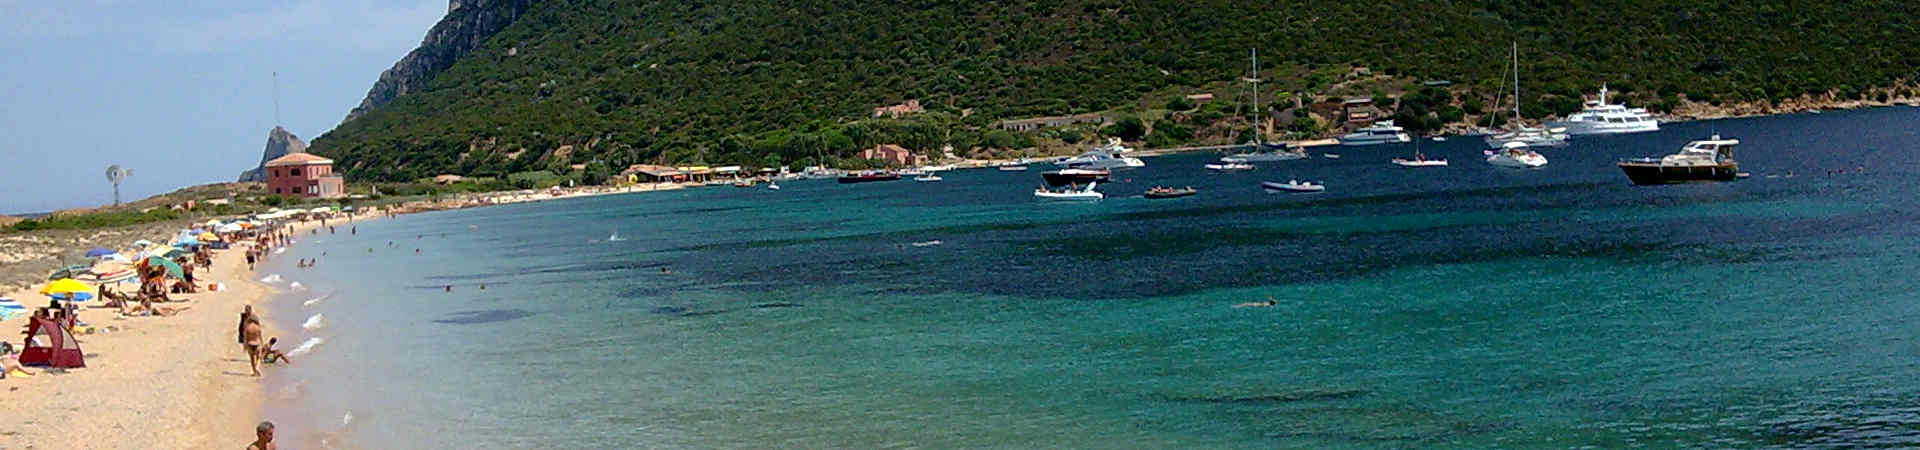 Imagen recurso del puerto de destino Olbia para la ruta en ferry Piombino - Olbia